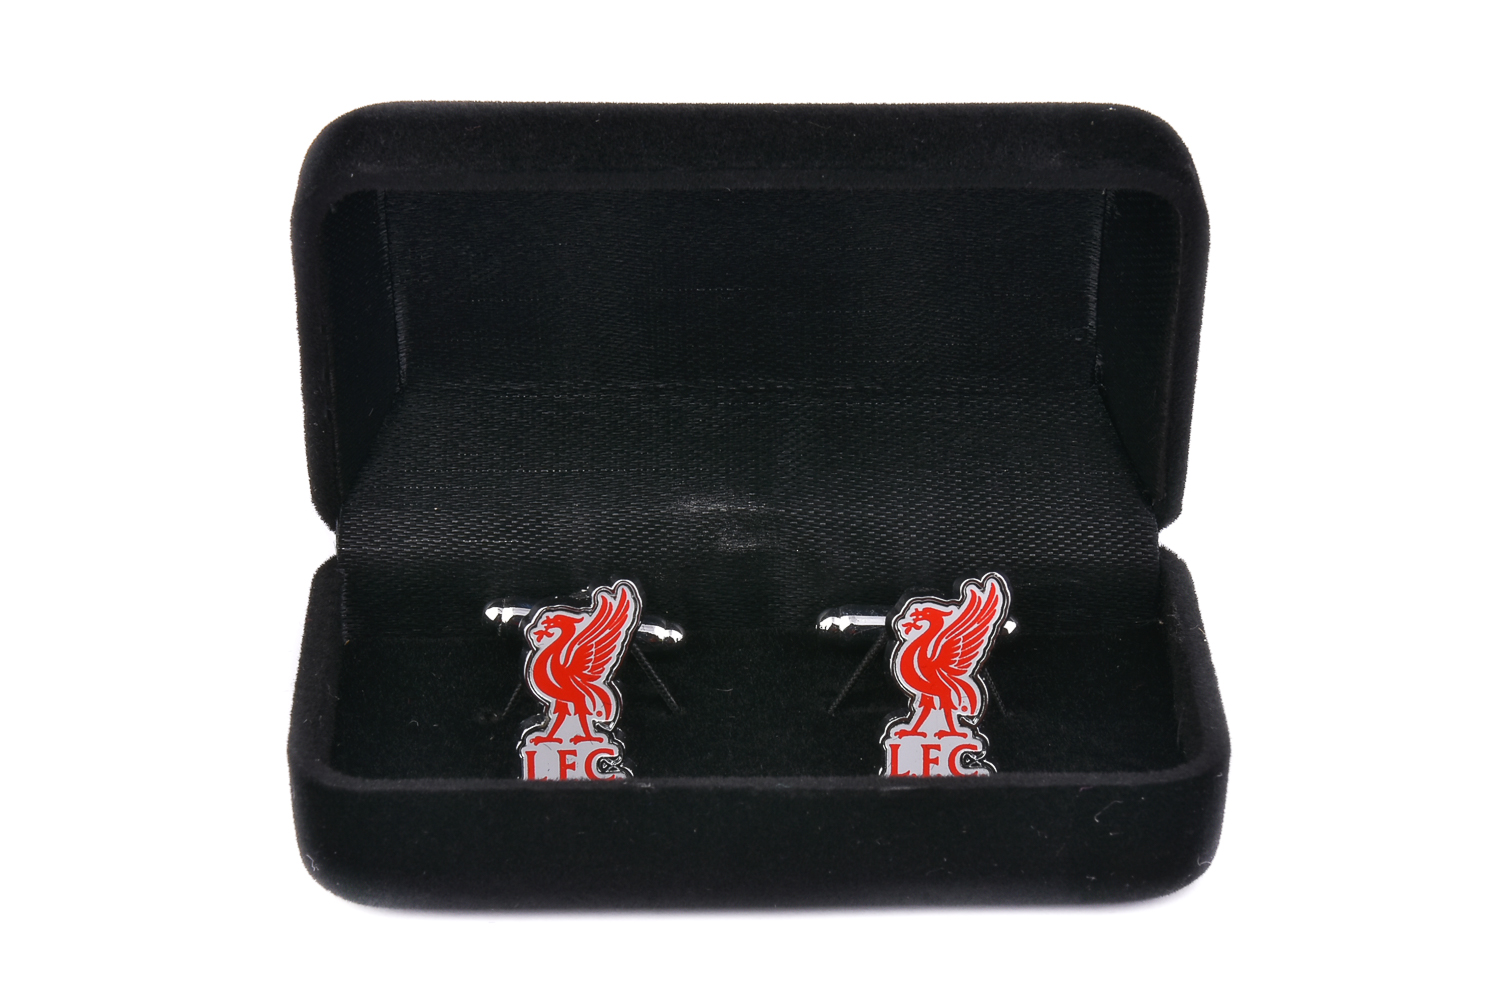 Liverpool football club cufflinks